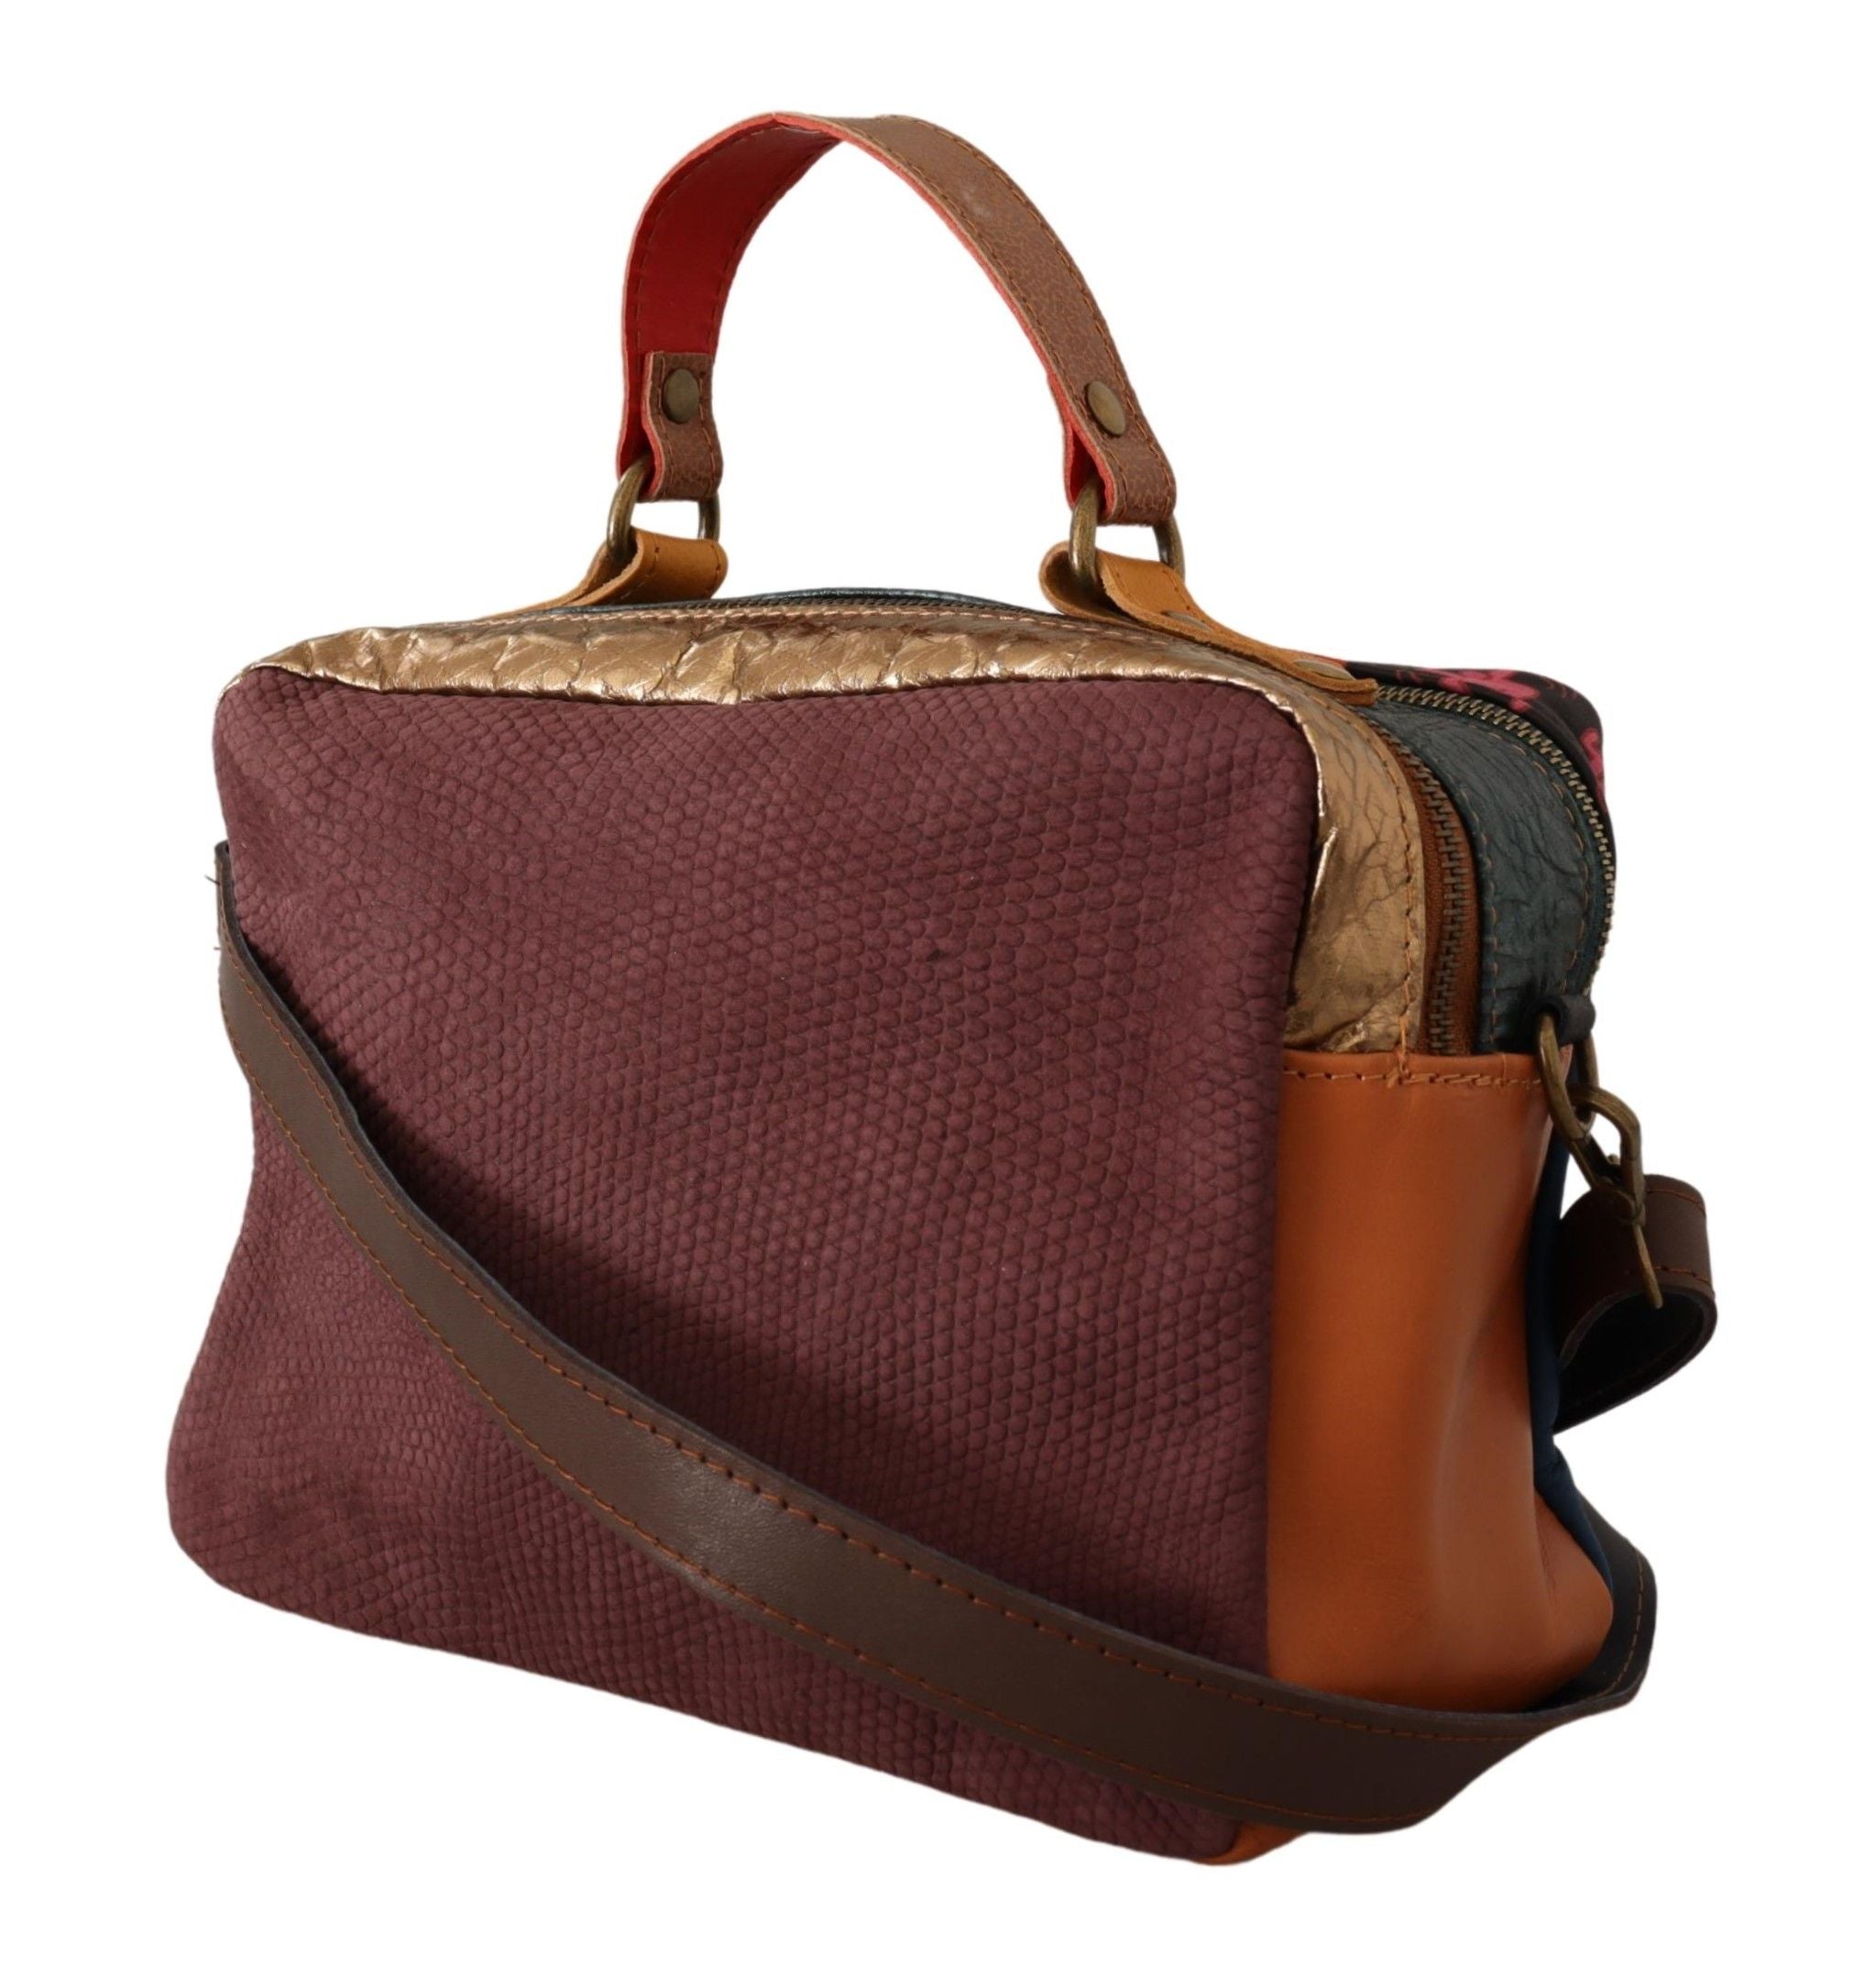 Multicolor Leather Shoulder Bag with Gold Details